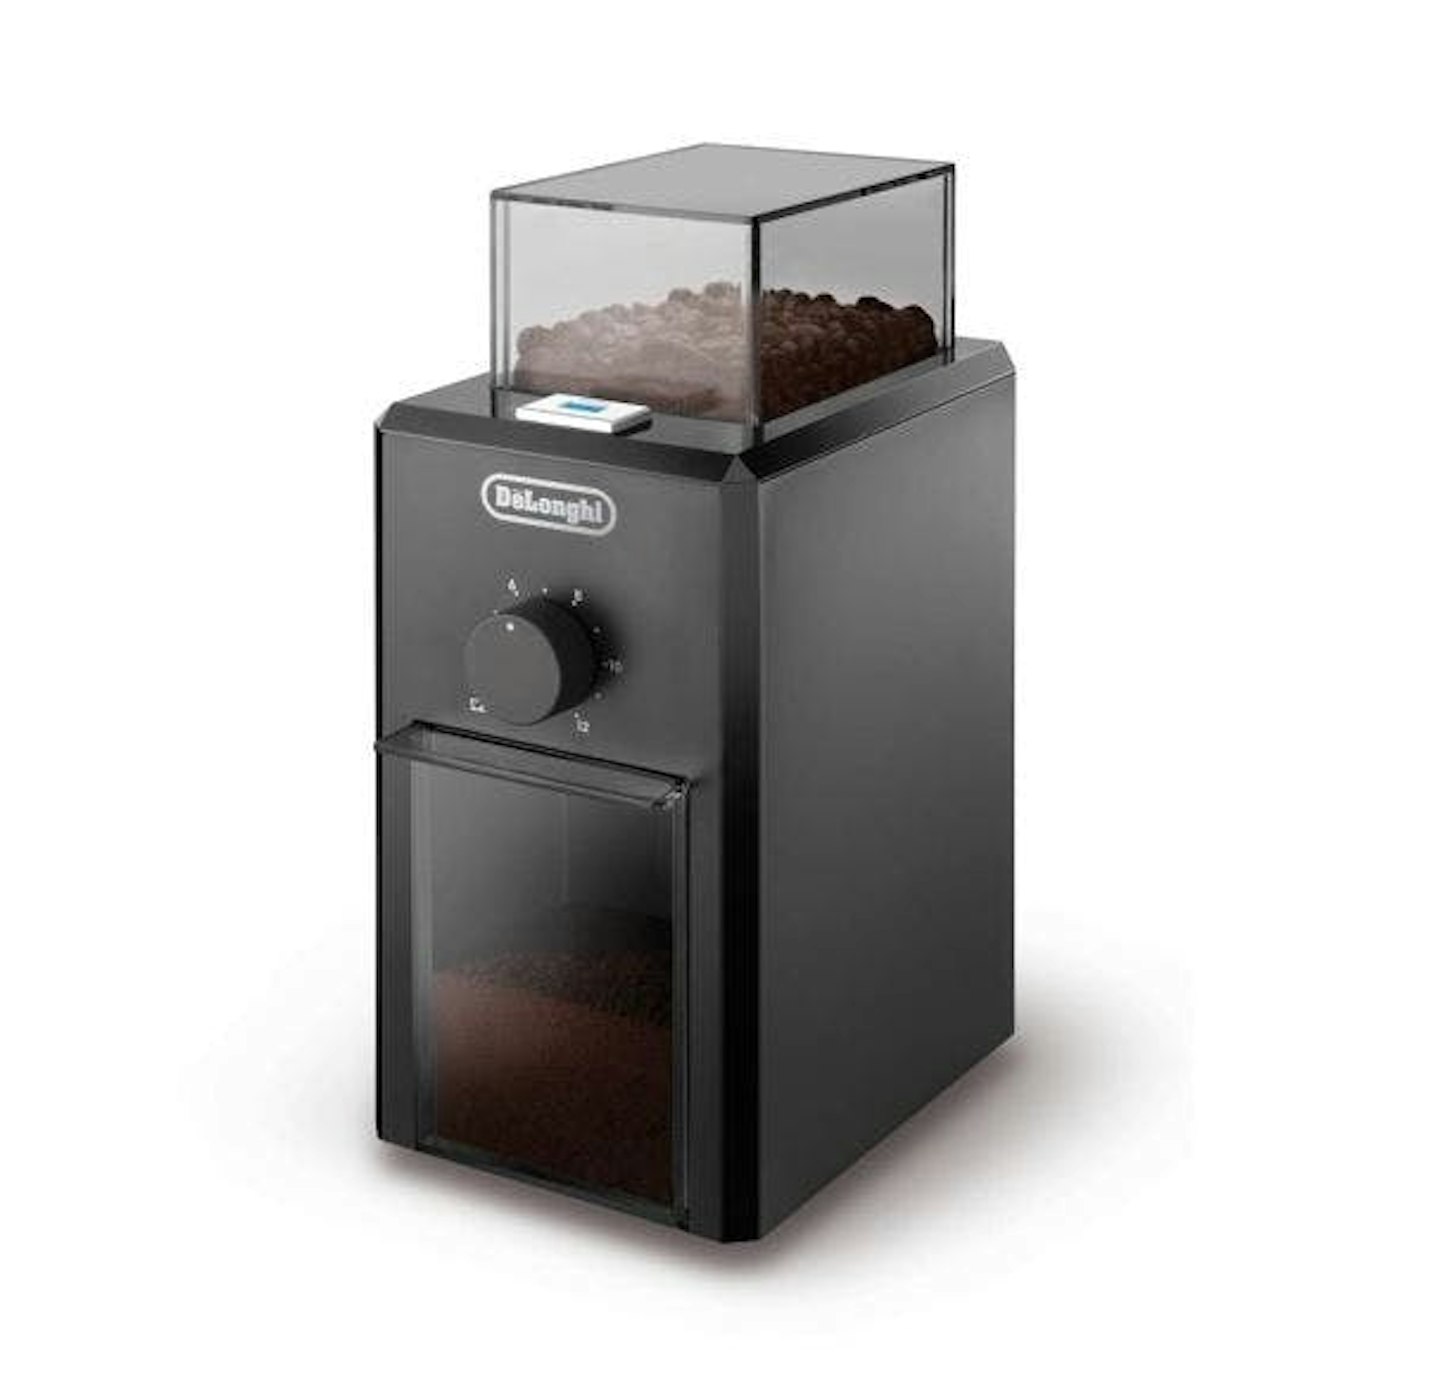 Best coffee grinders: De'Longhi, Coffee grinder